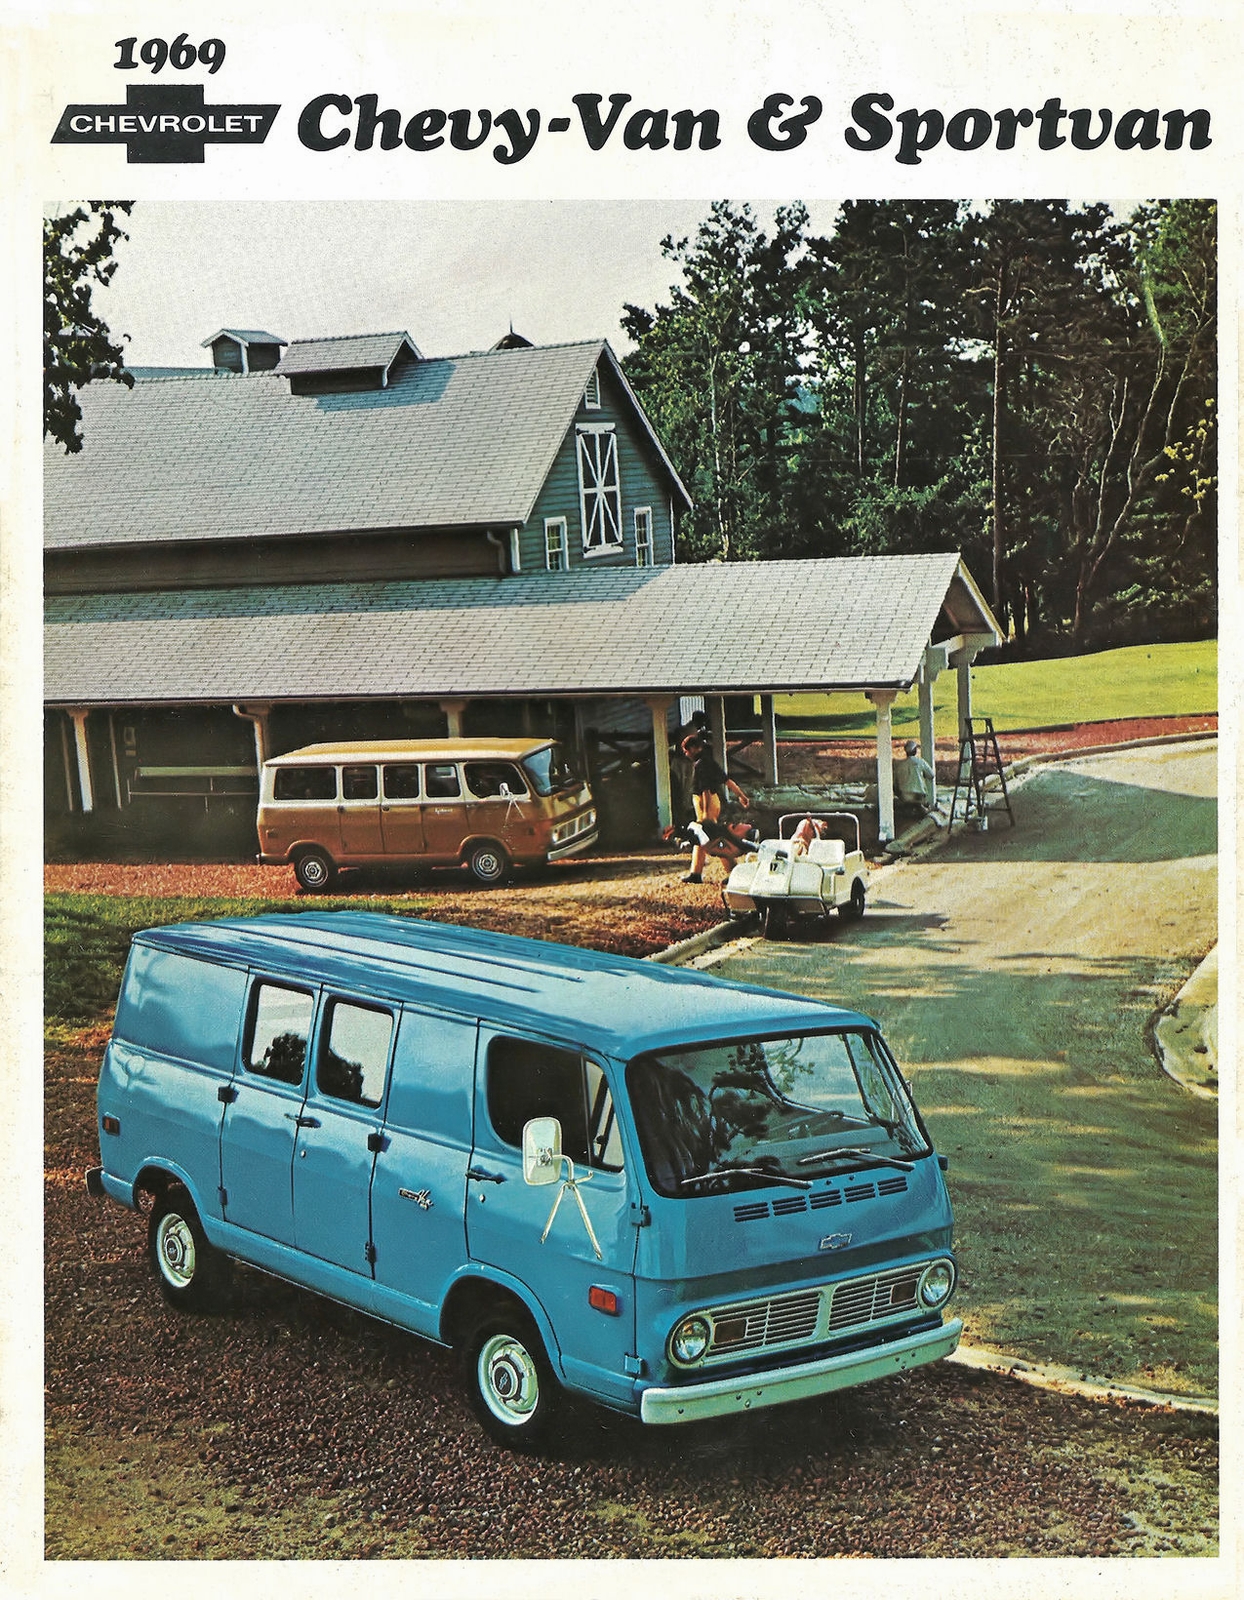 n_1969 Chevy Van and Sportvan-01.jpg